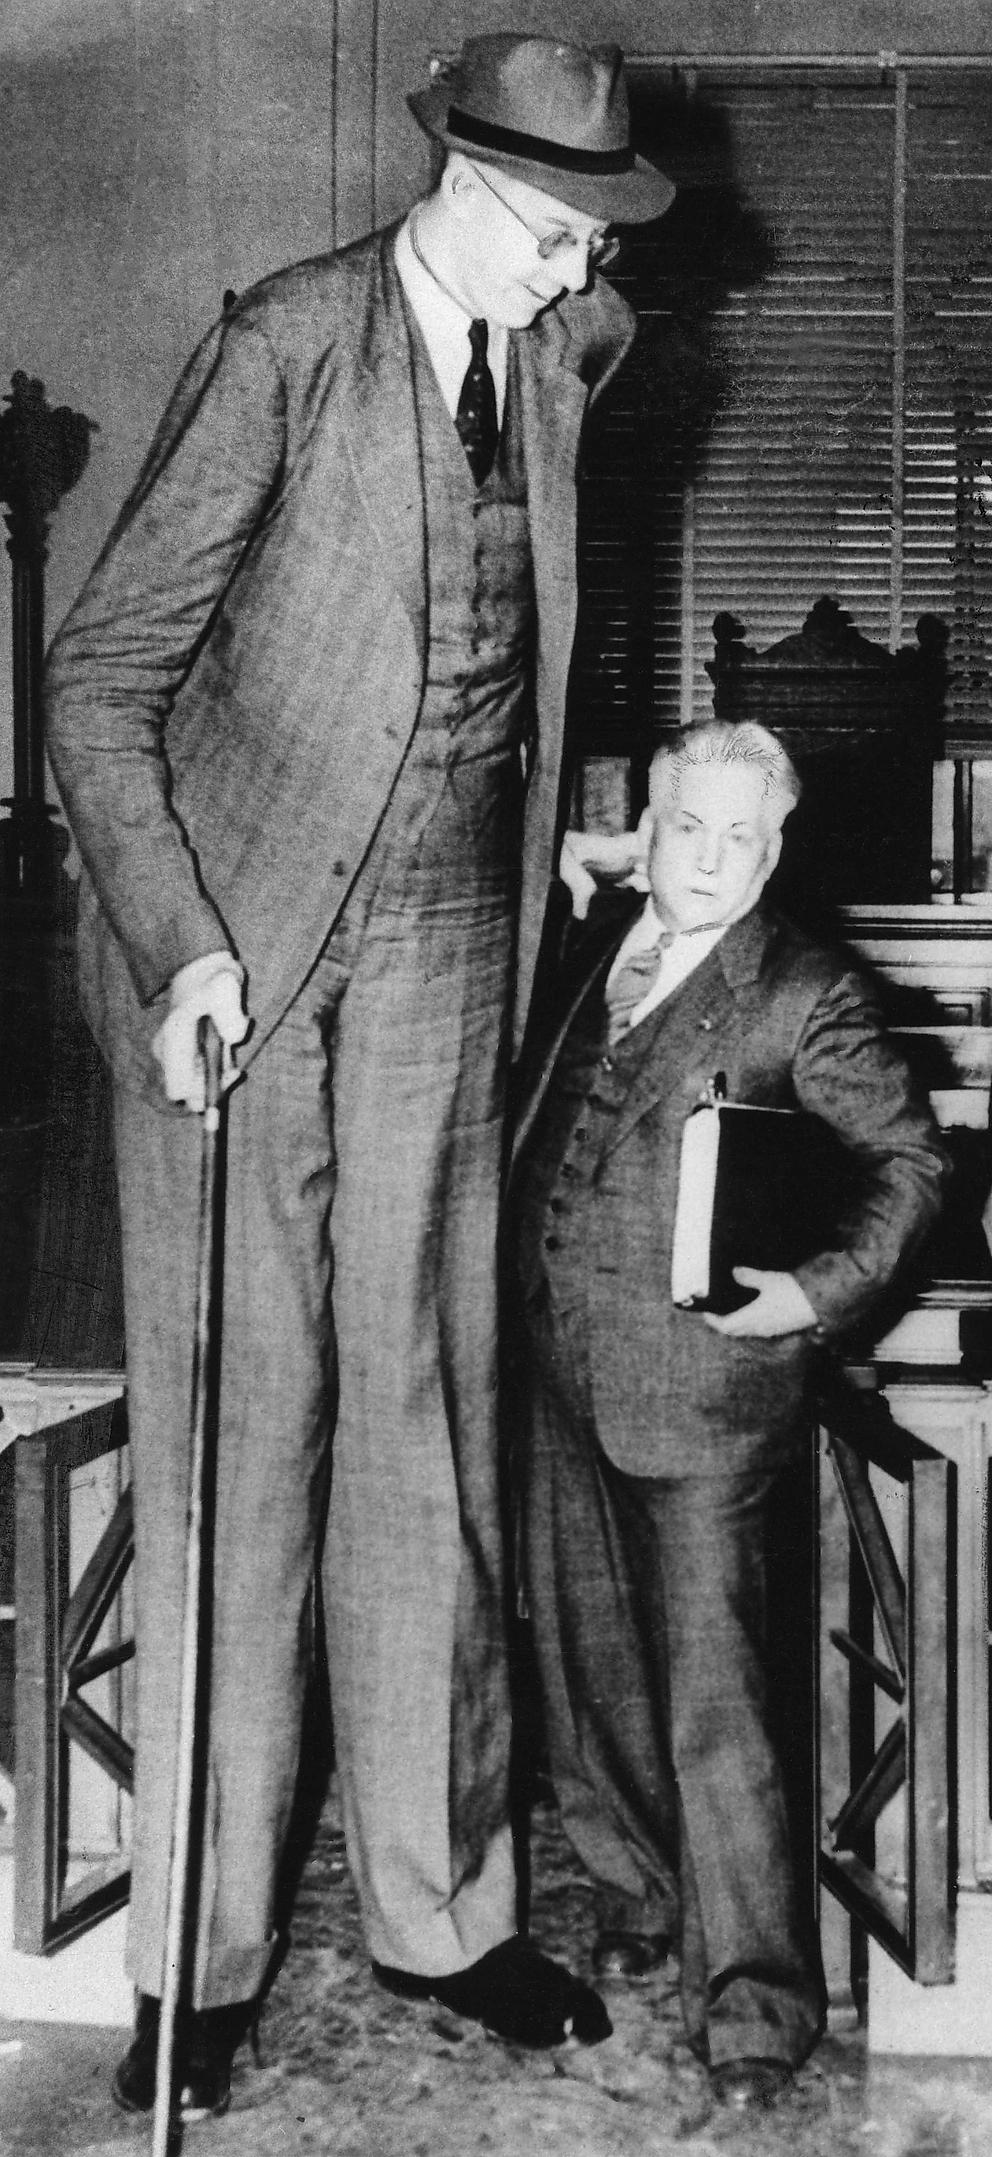 LILLE FAR Robert Wadlow (1918-1940), världens längste man genom tiderna, tillsammans med sin far. Robert Wadlow var 272 cm lång.